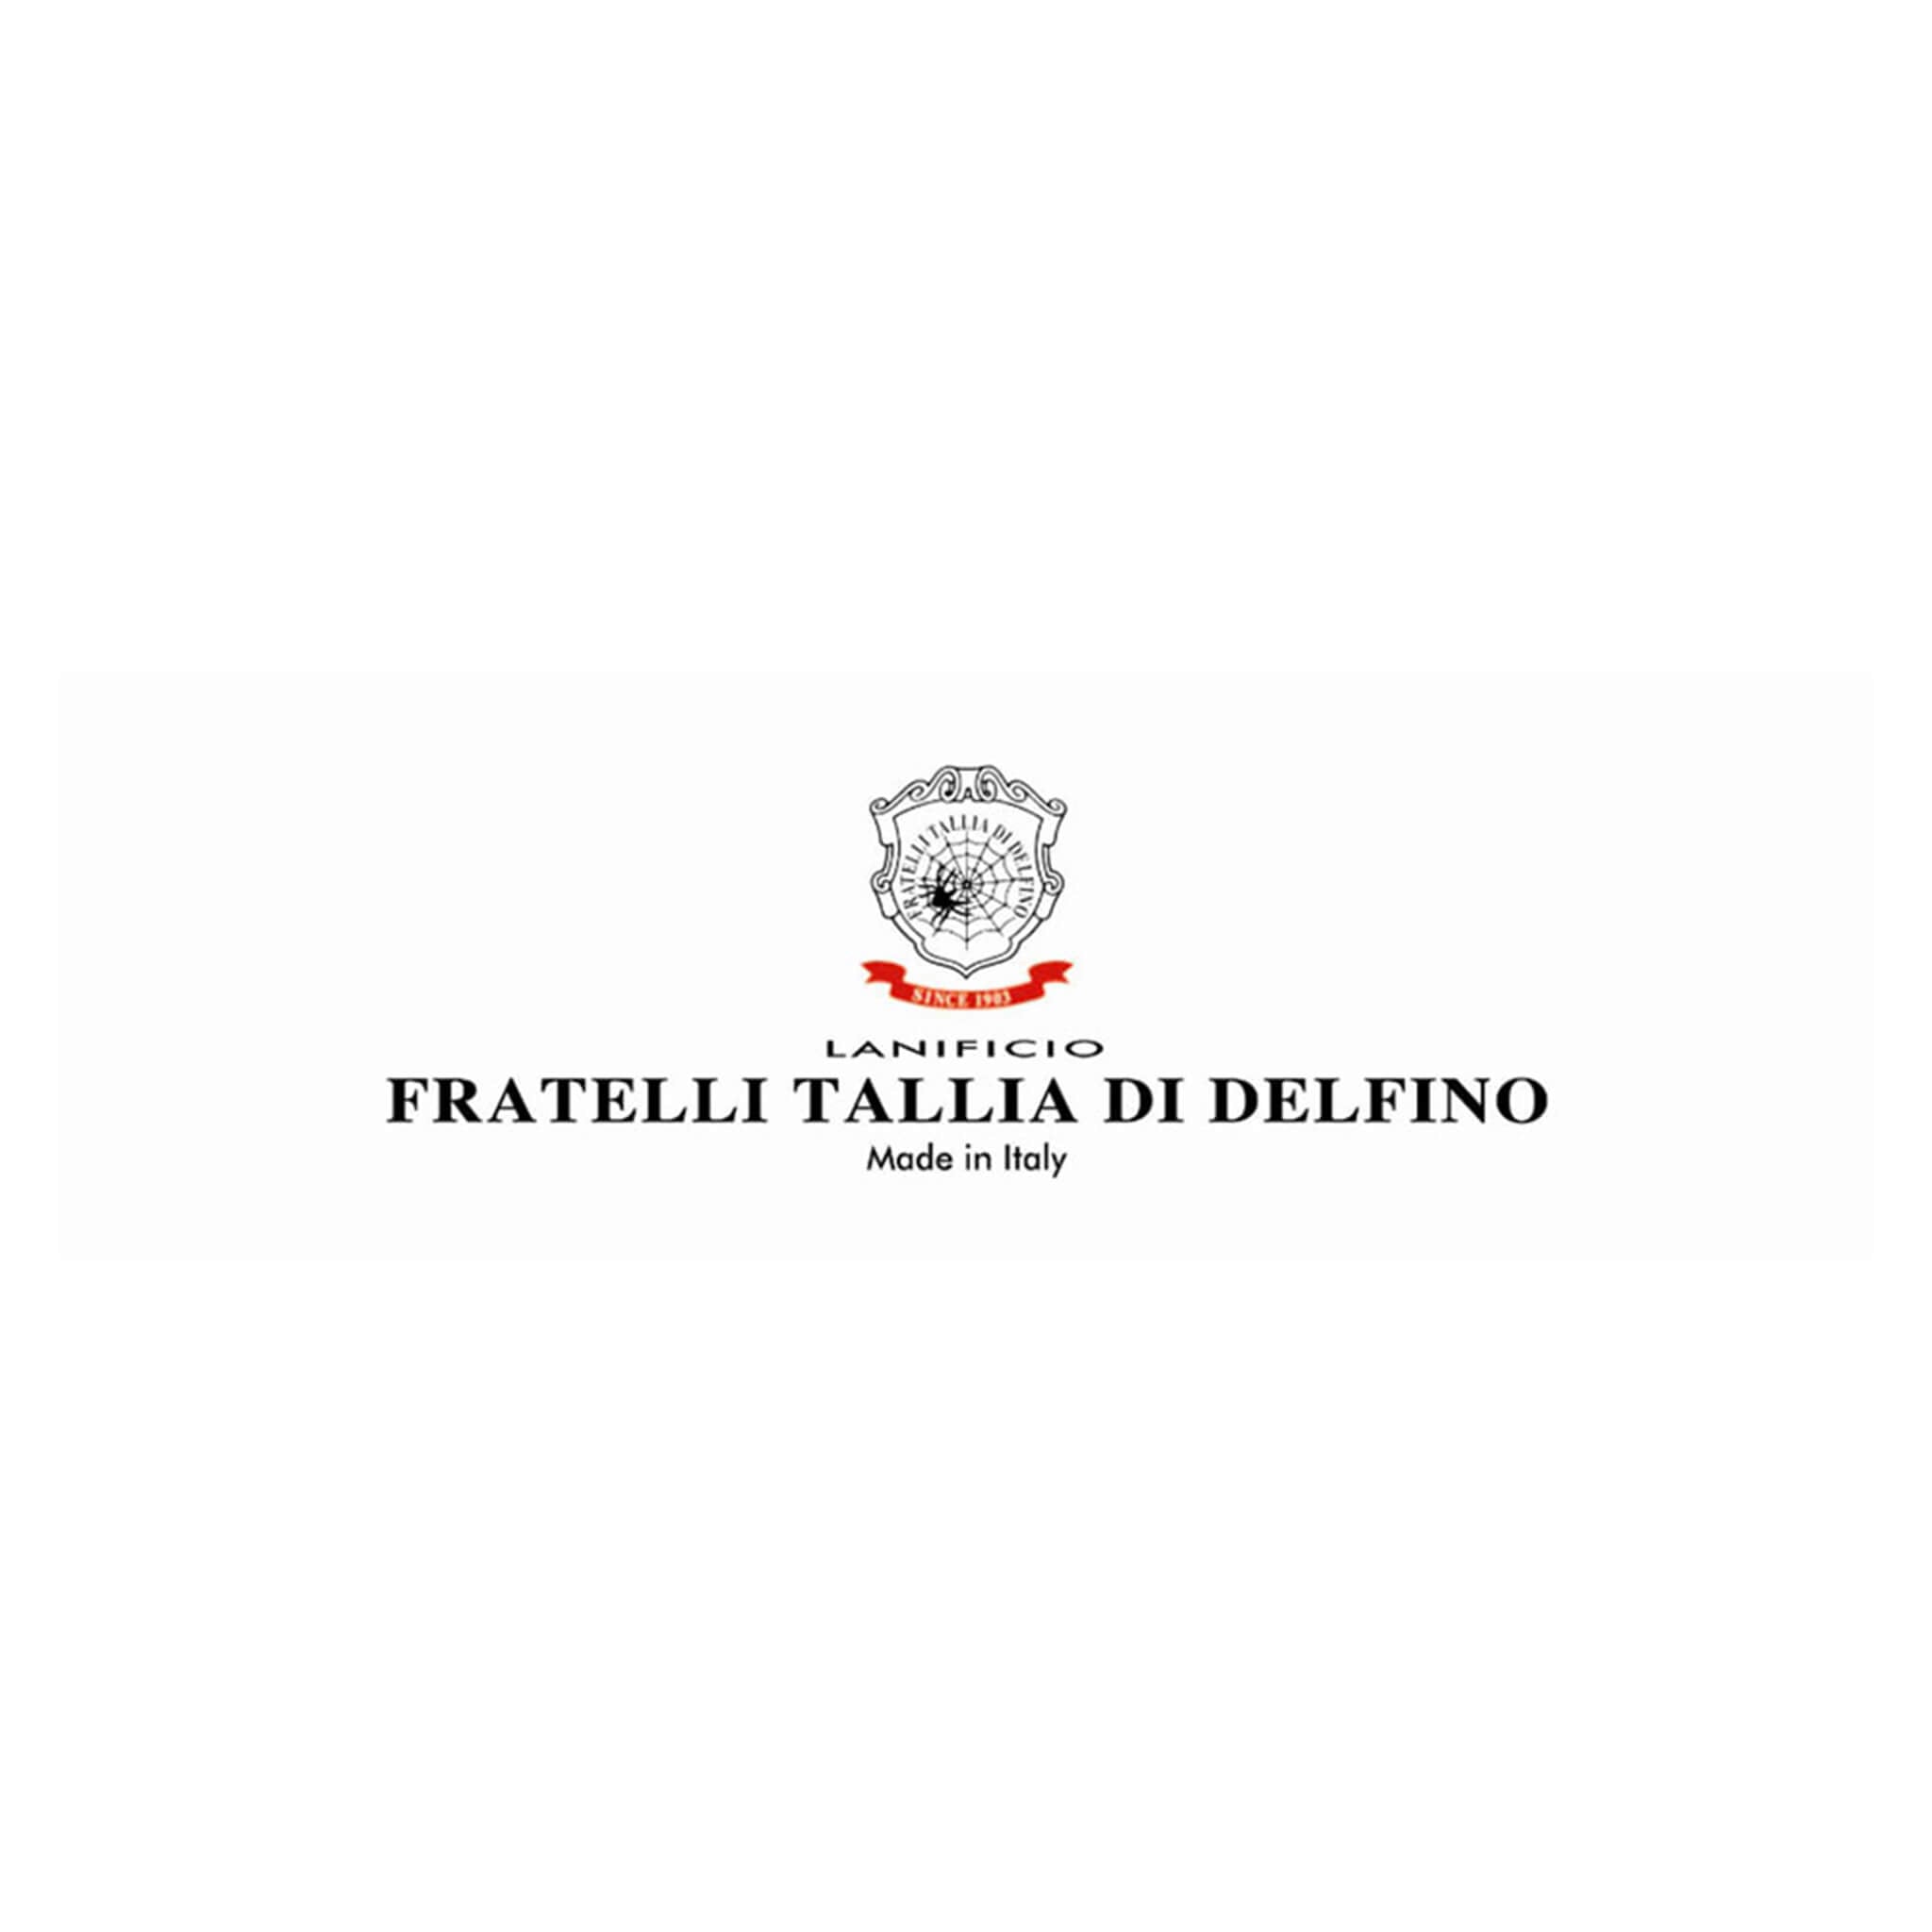 Fratelli Tallia Di Delfino